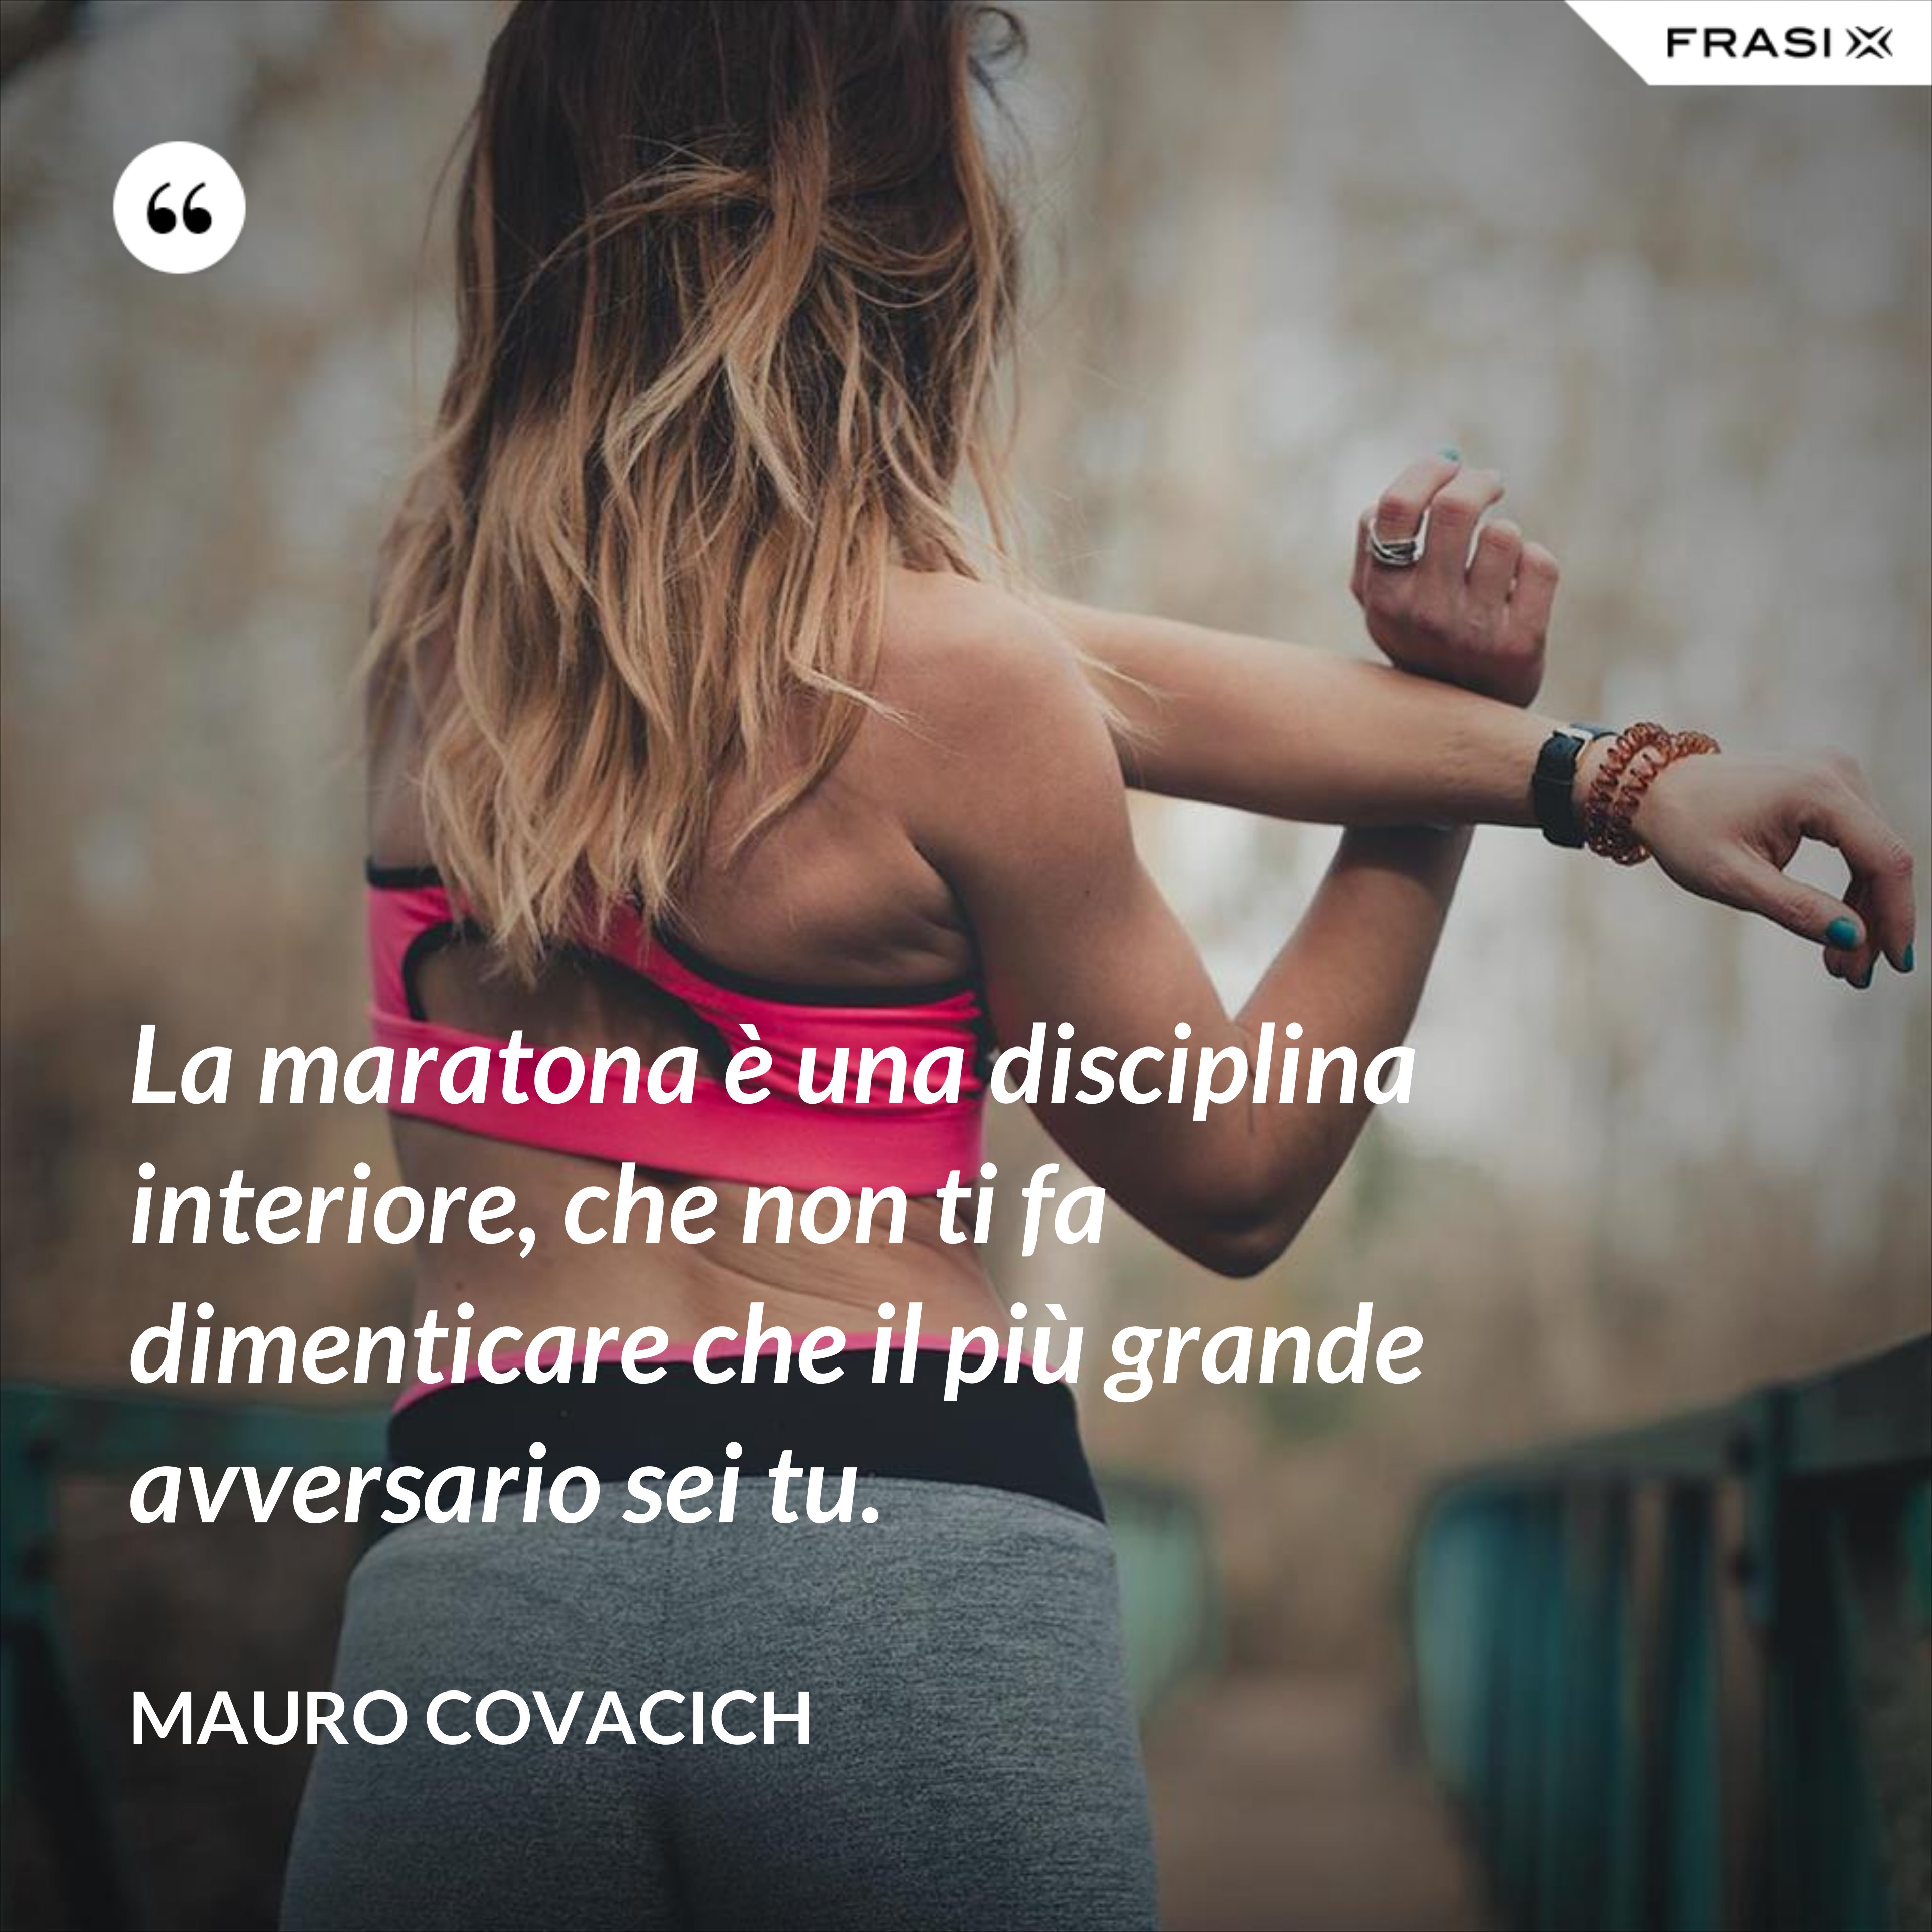 La maratona è una disciplina interiore, che non ti fa dimenticare che il più grande avversario sei tu. - Mauro Covacich